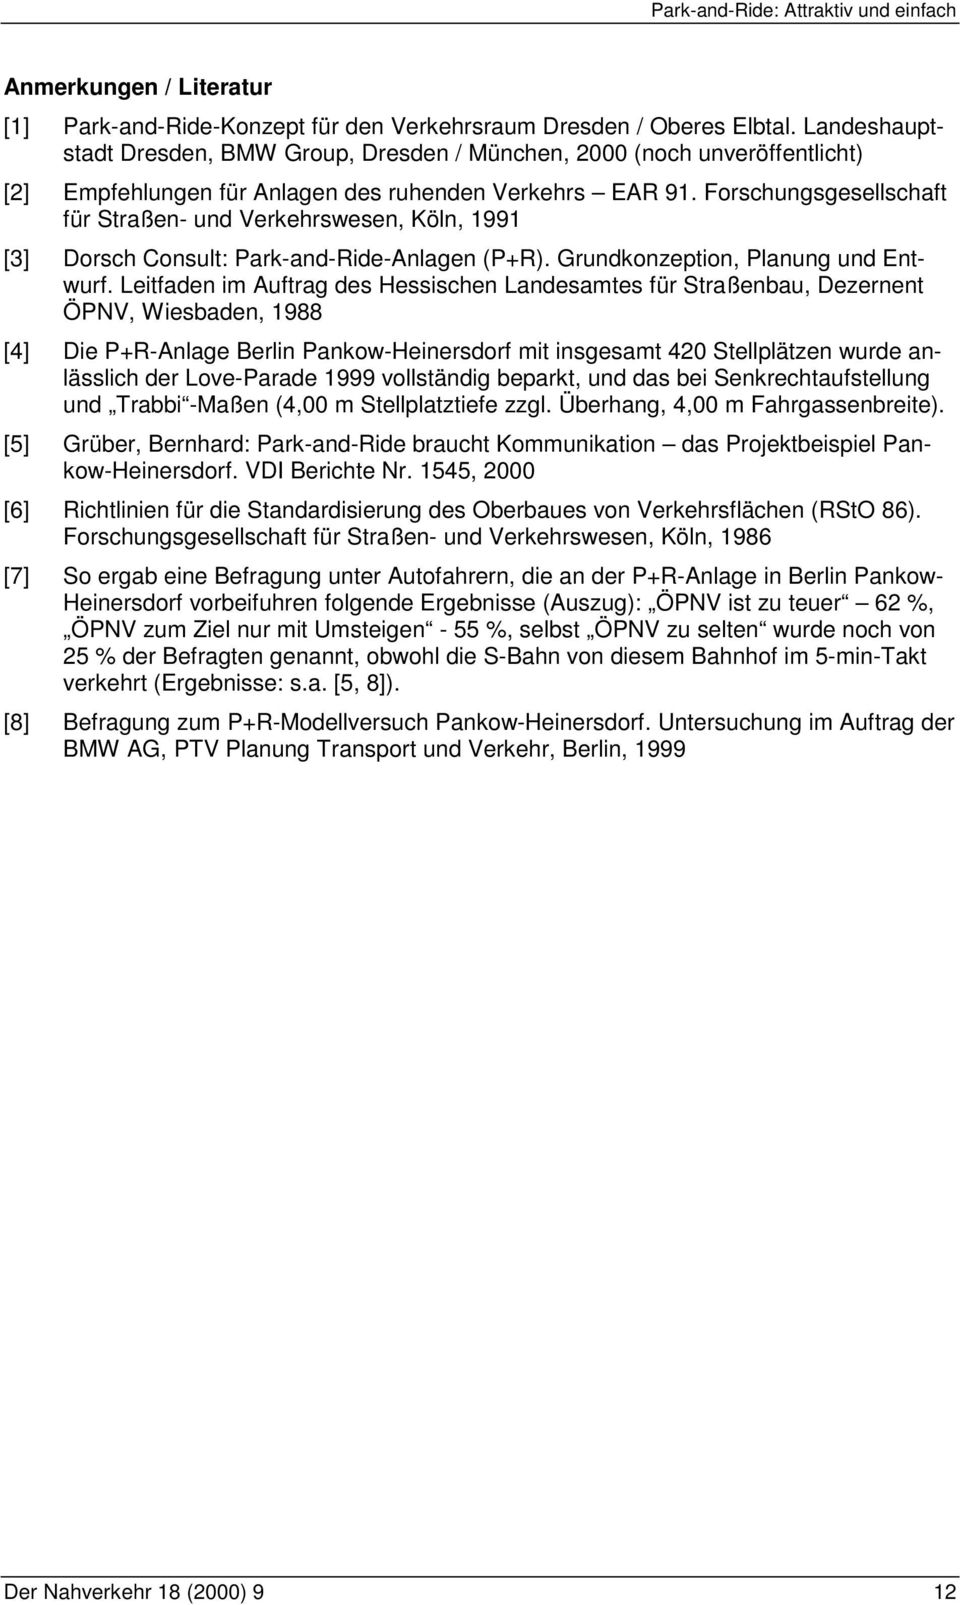 Forschungsgesellschaft für Straßen- und Verkehrswesen, Köln, 1991 [3] Dorsch Consult: Park-and-Ride-Anlagen (P+R). Grundkonzeption, Planung und Entwurf.